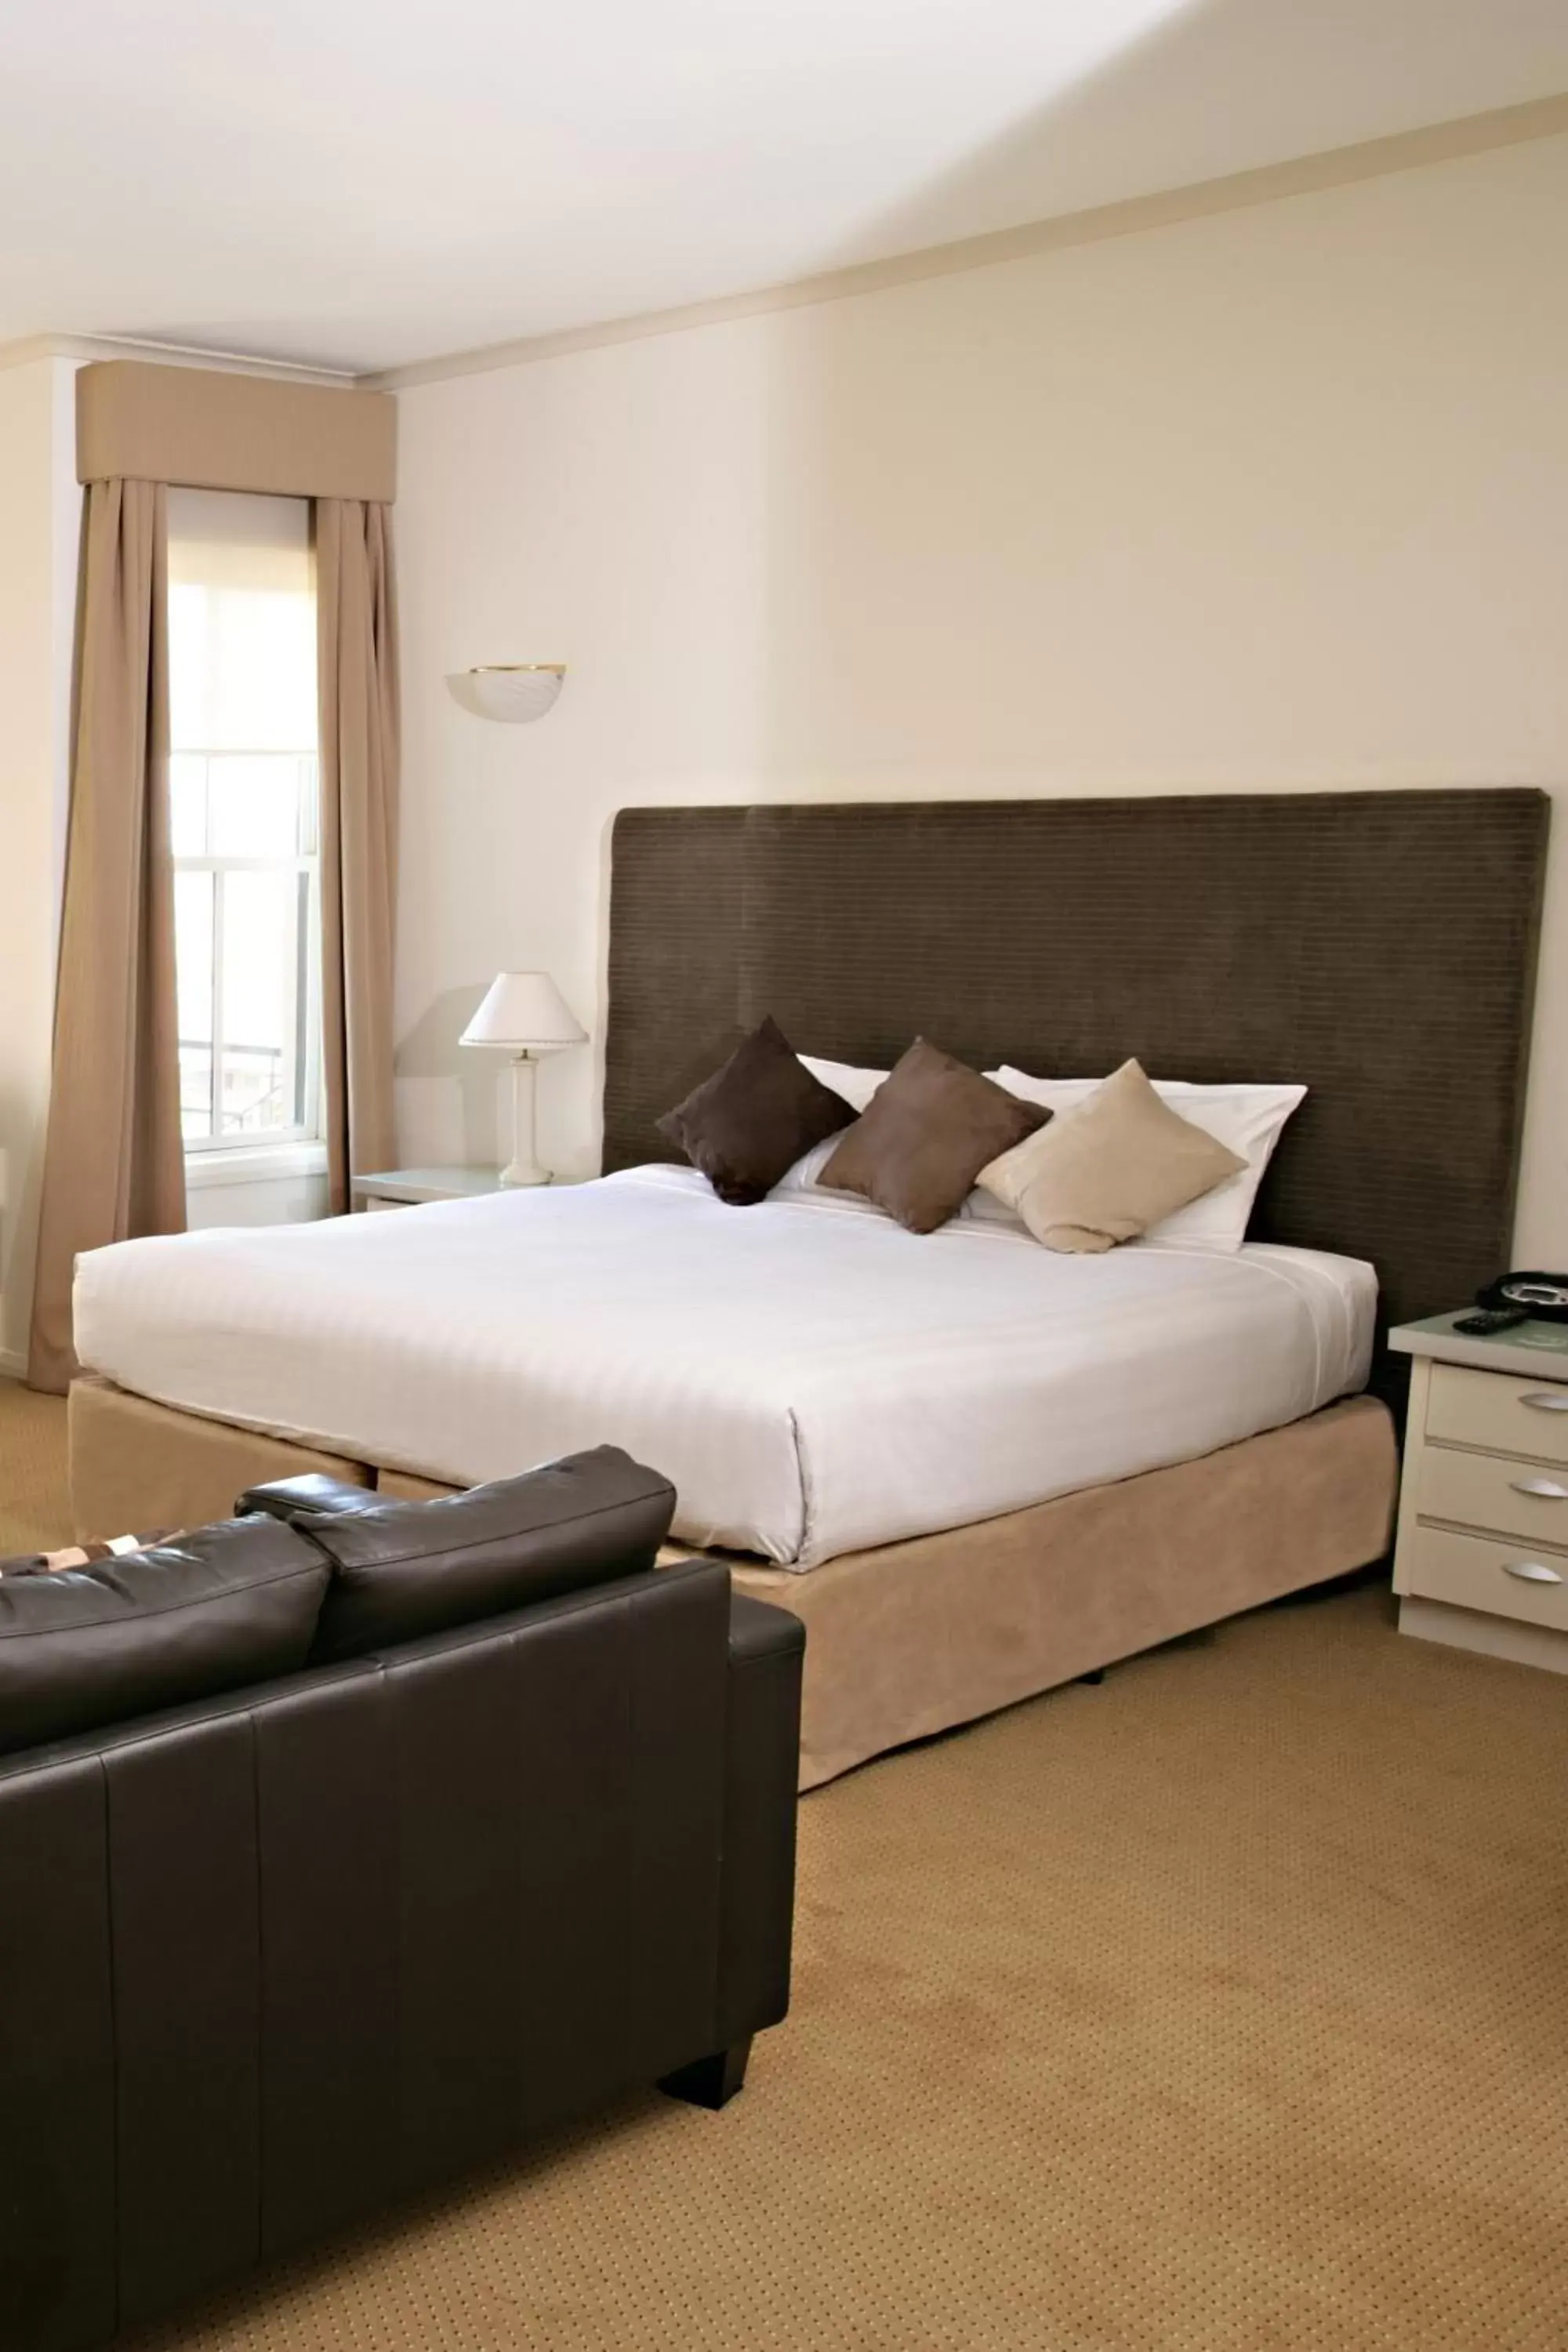 Bedroom, Bed in Beau Monde International